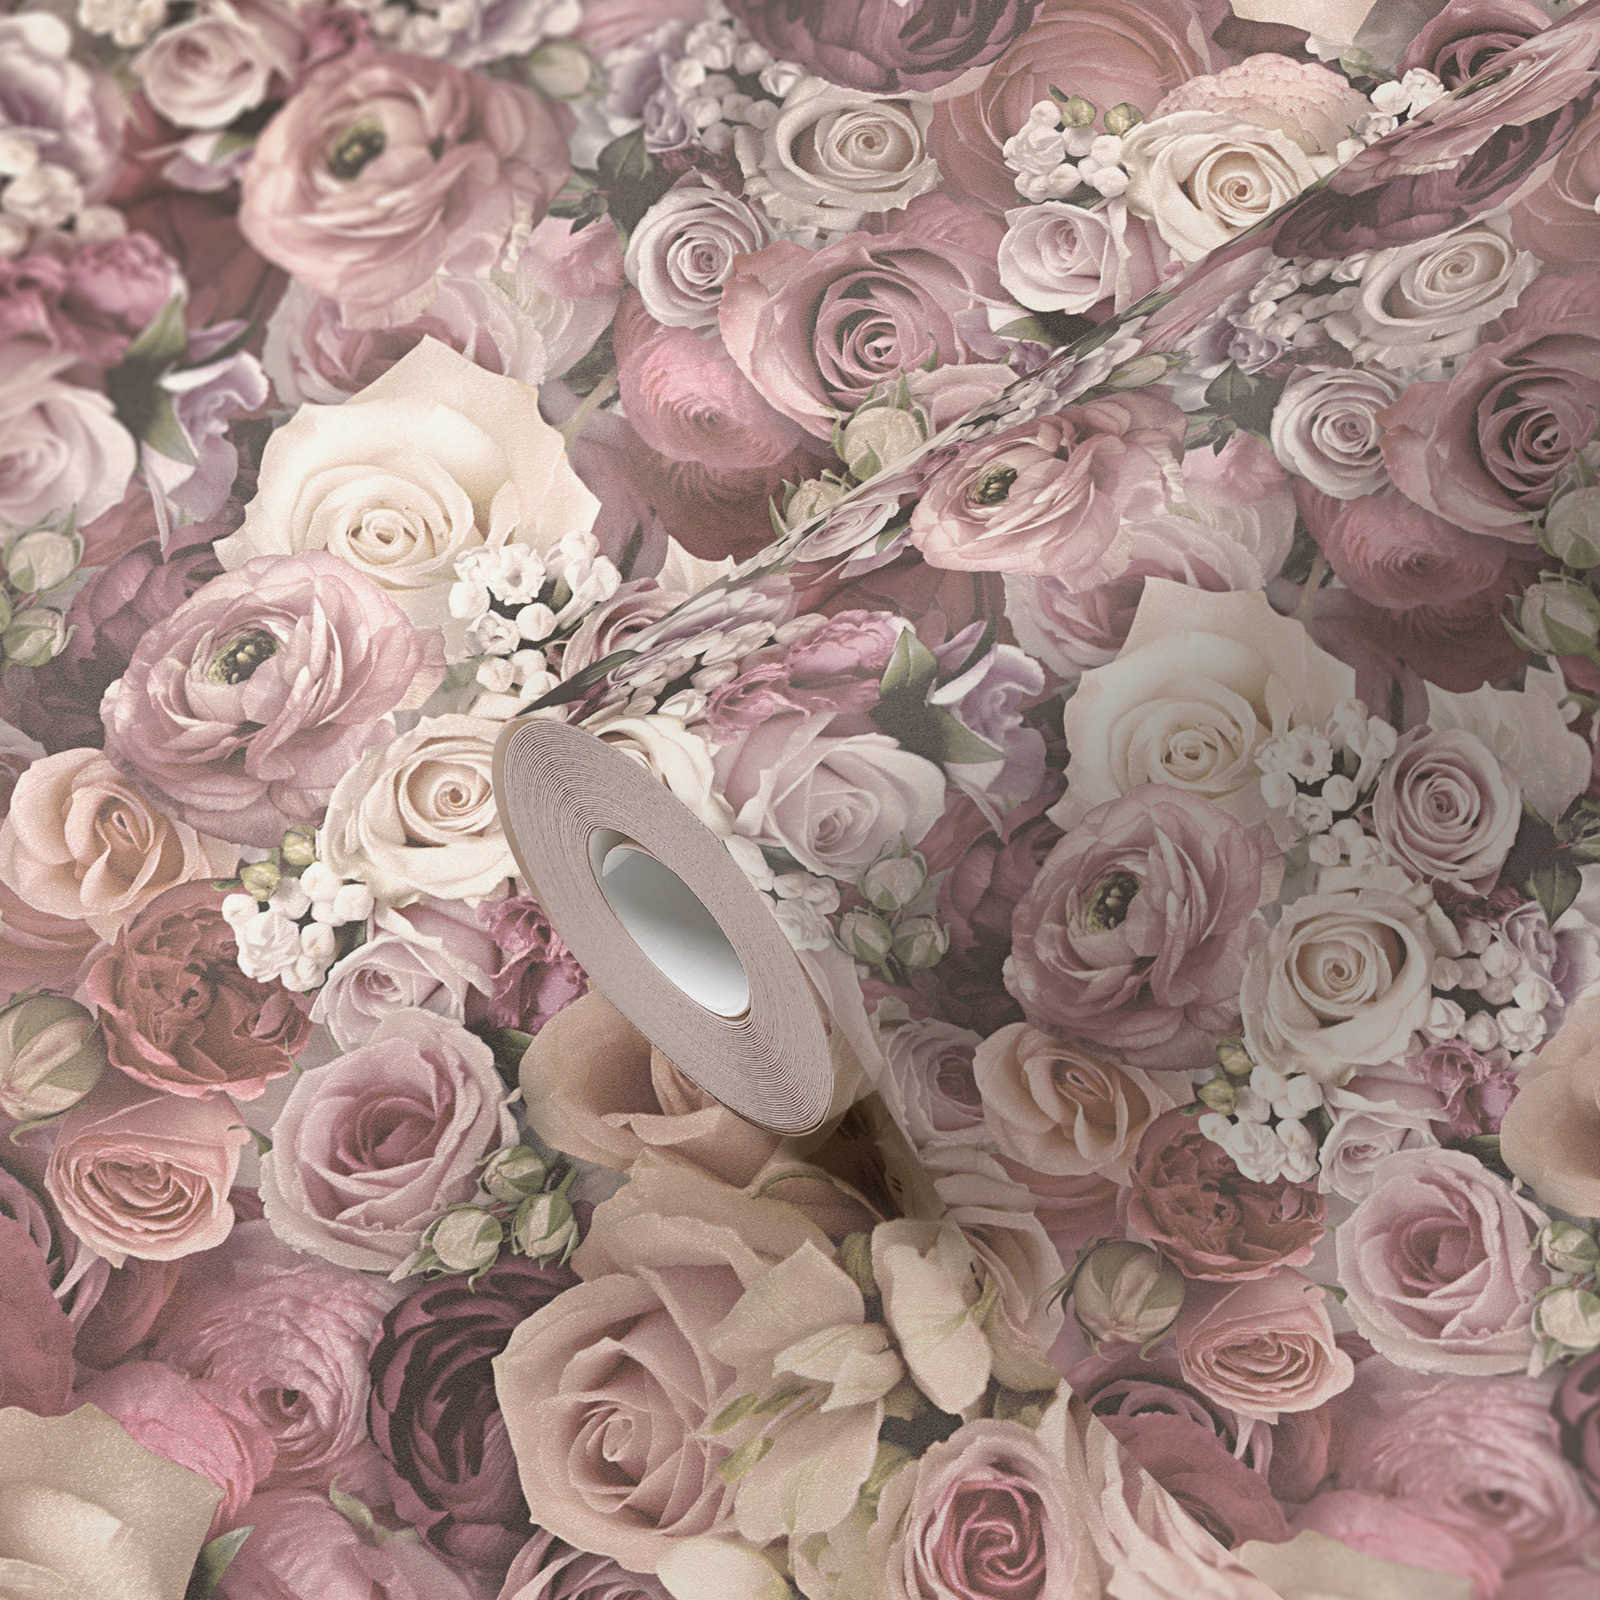             papel pintado rosas en delicado mar de flores rosa - crema
        